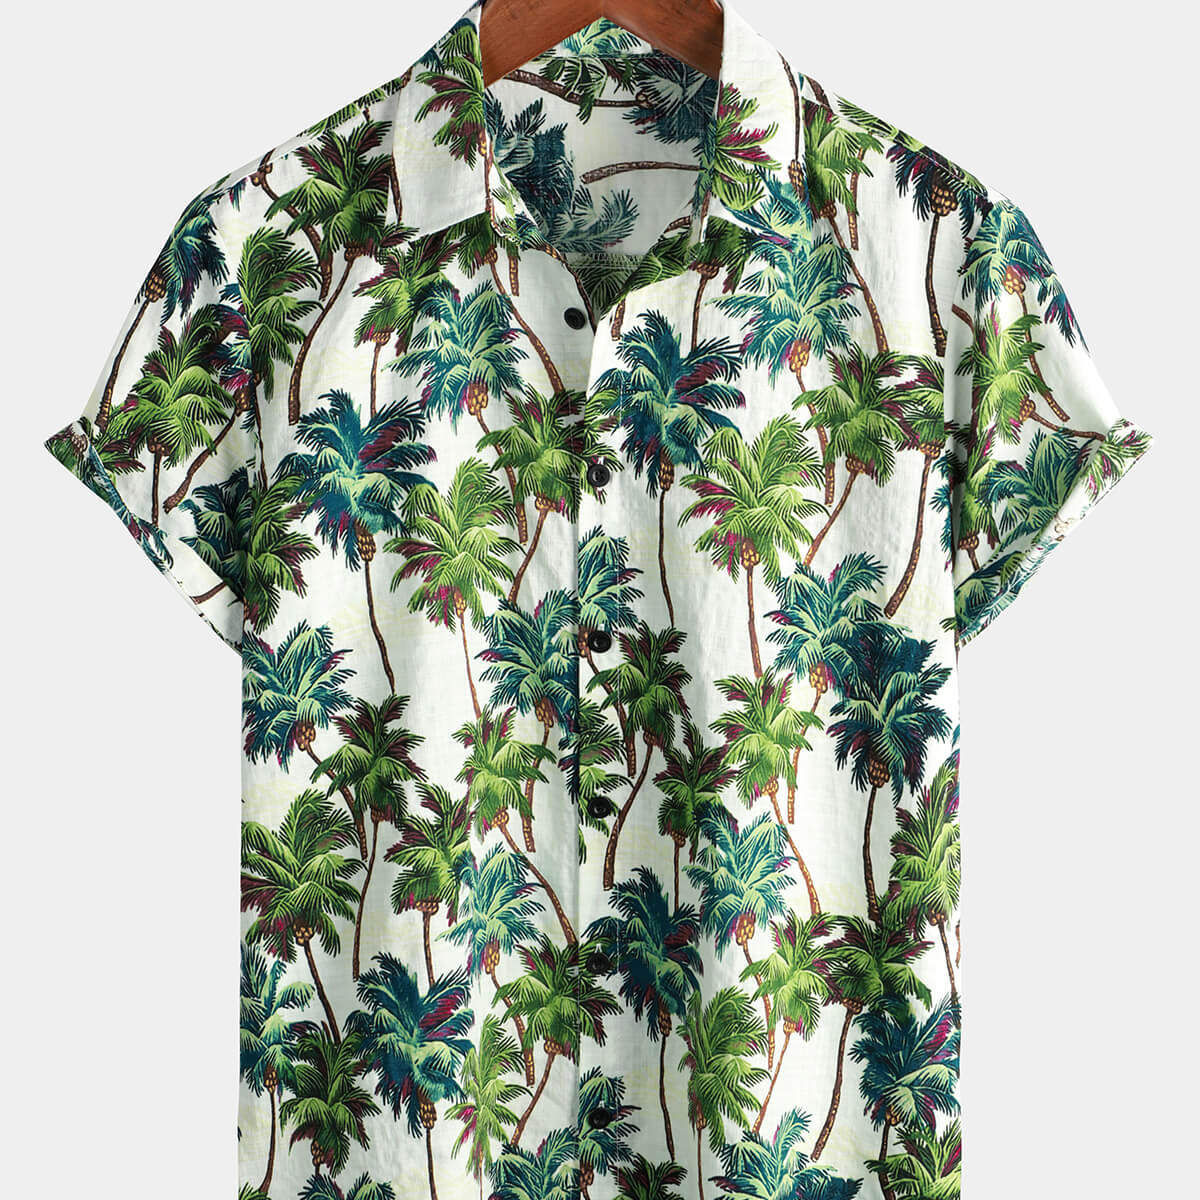 Camisa hawaiana vintage de manga corta con estampado floral tropical para hombre